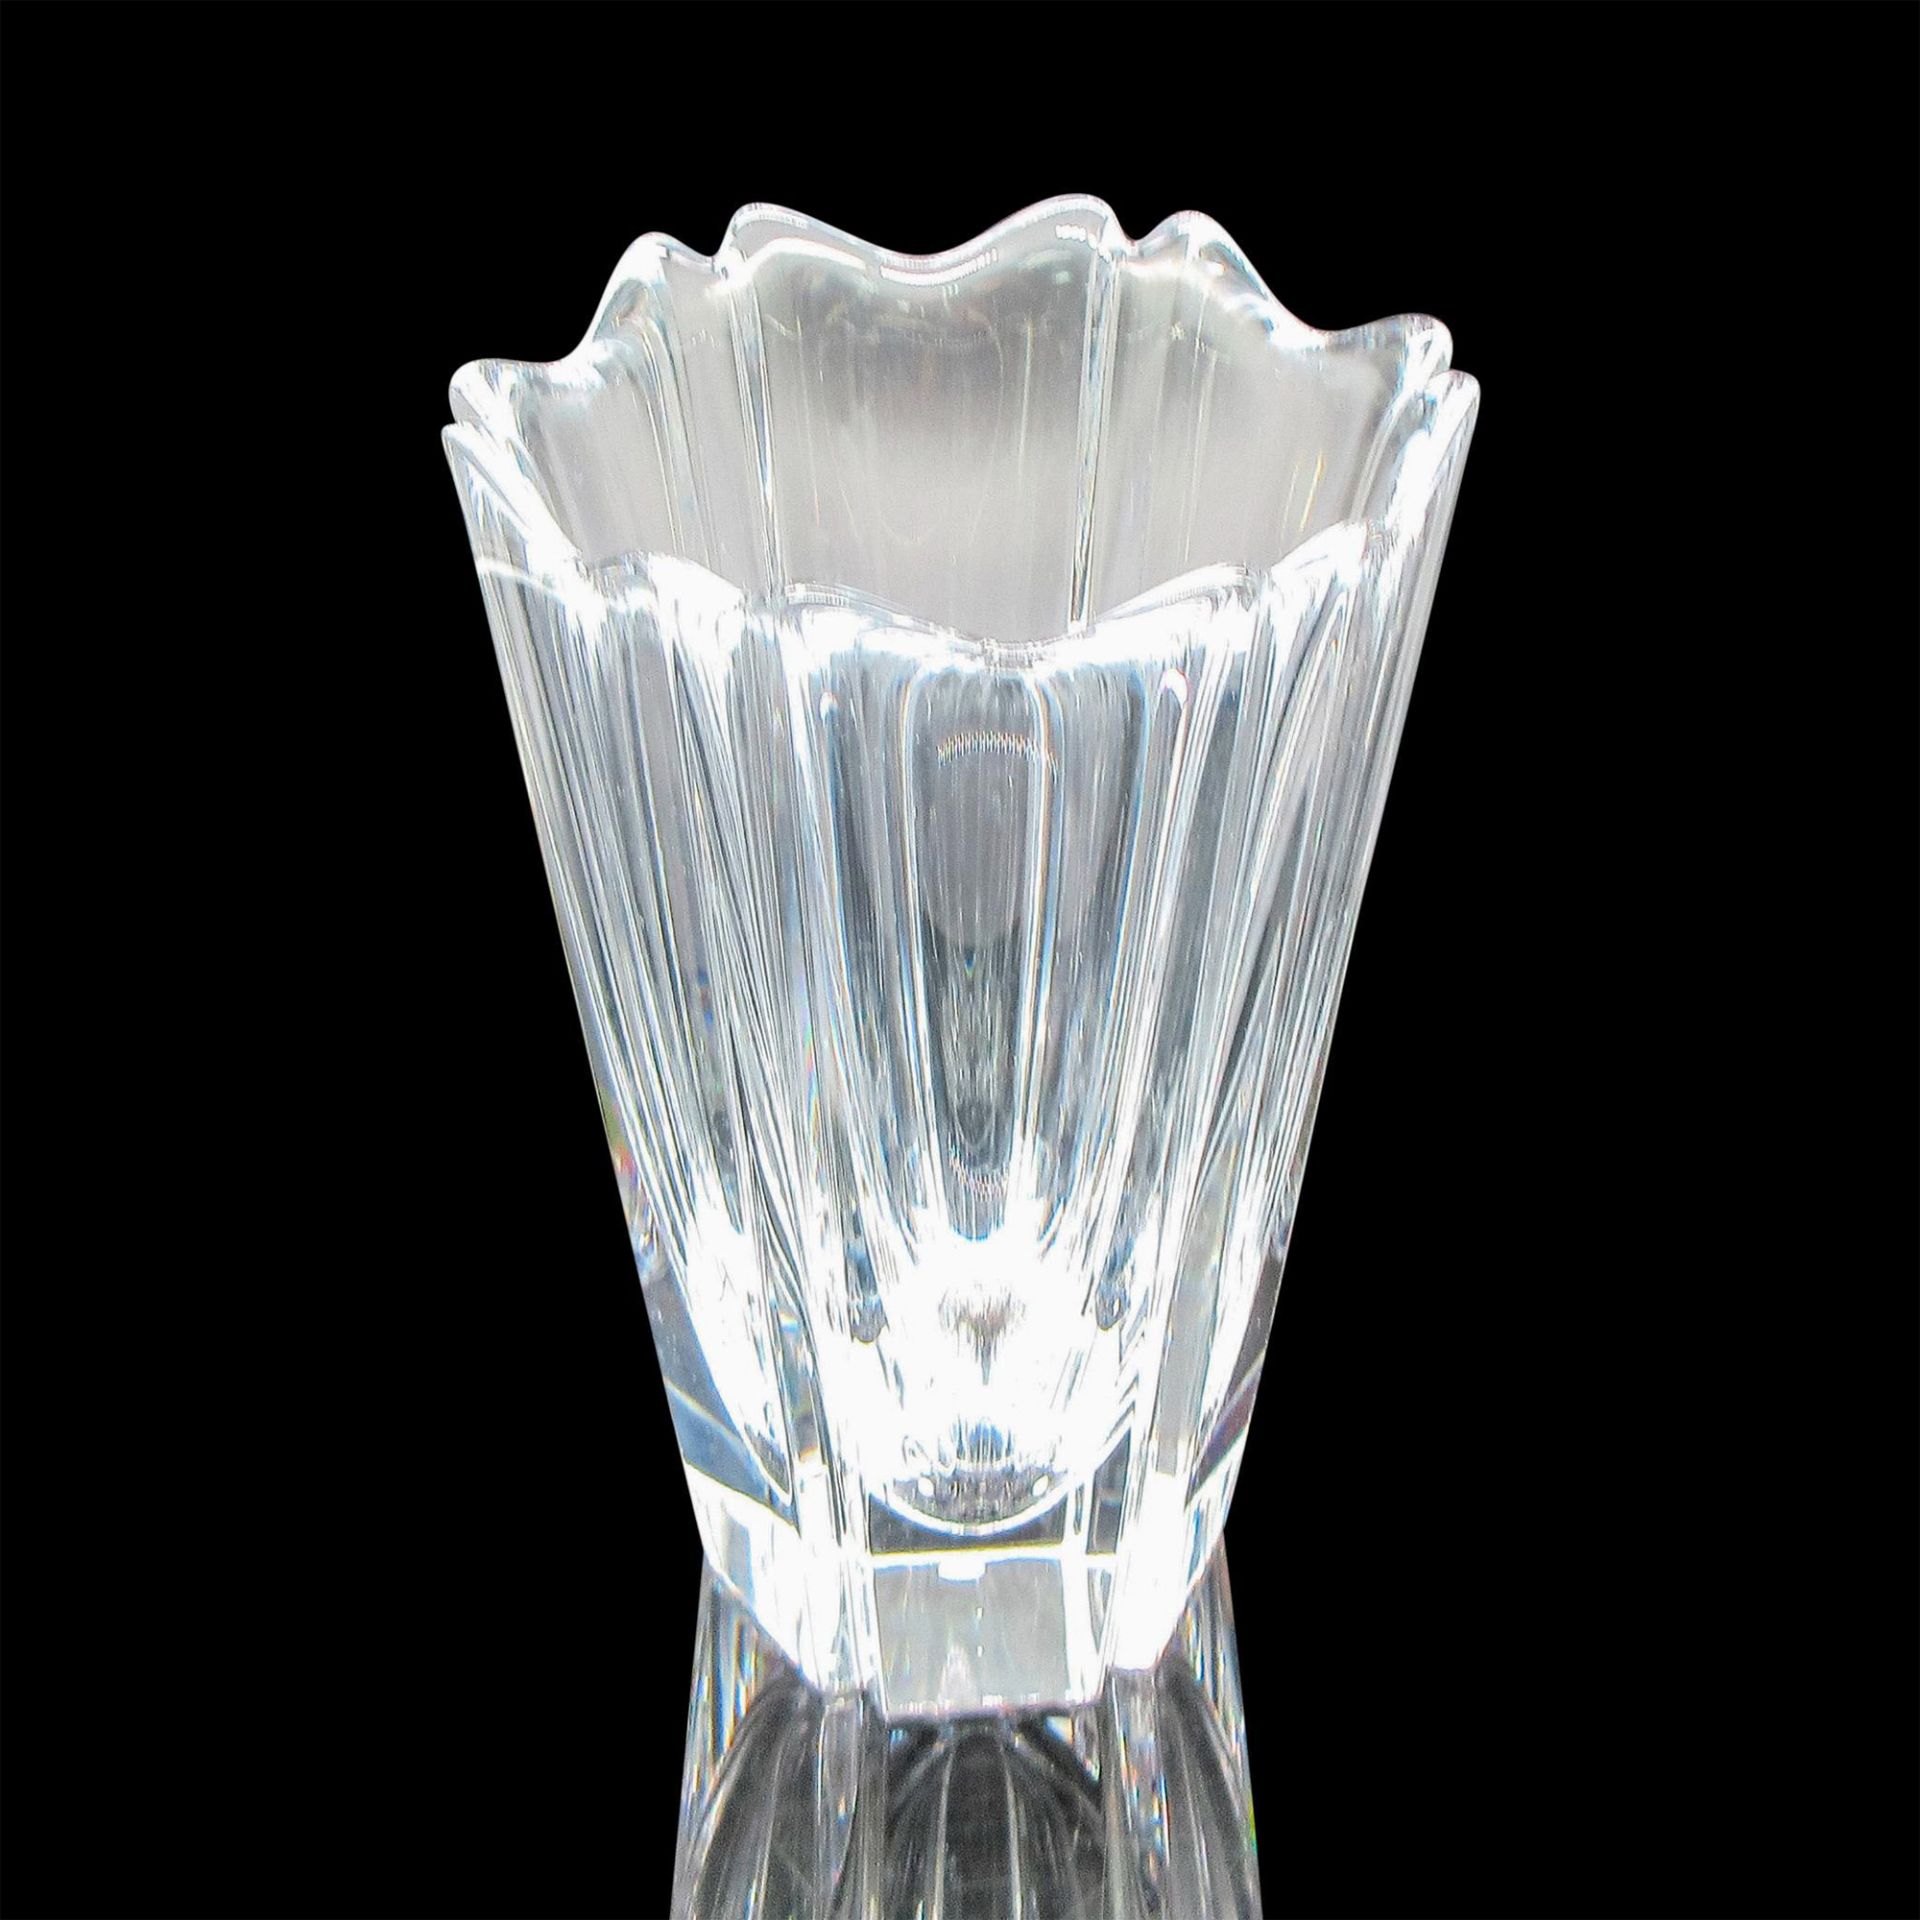 Orrefors Crystal Vase, Corona - Image 2 of 3